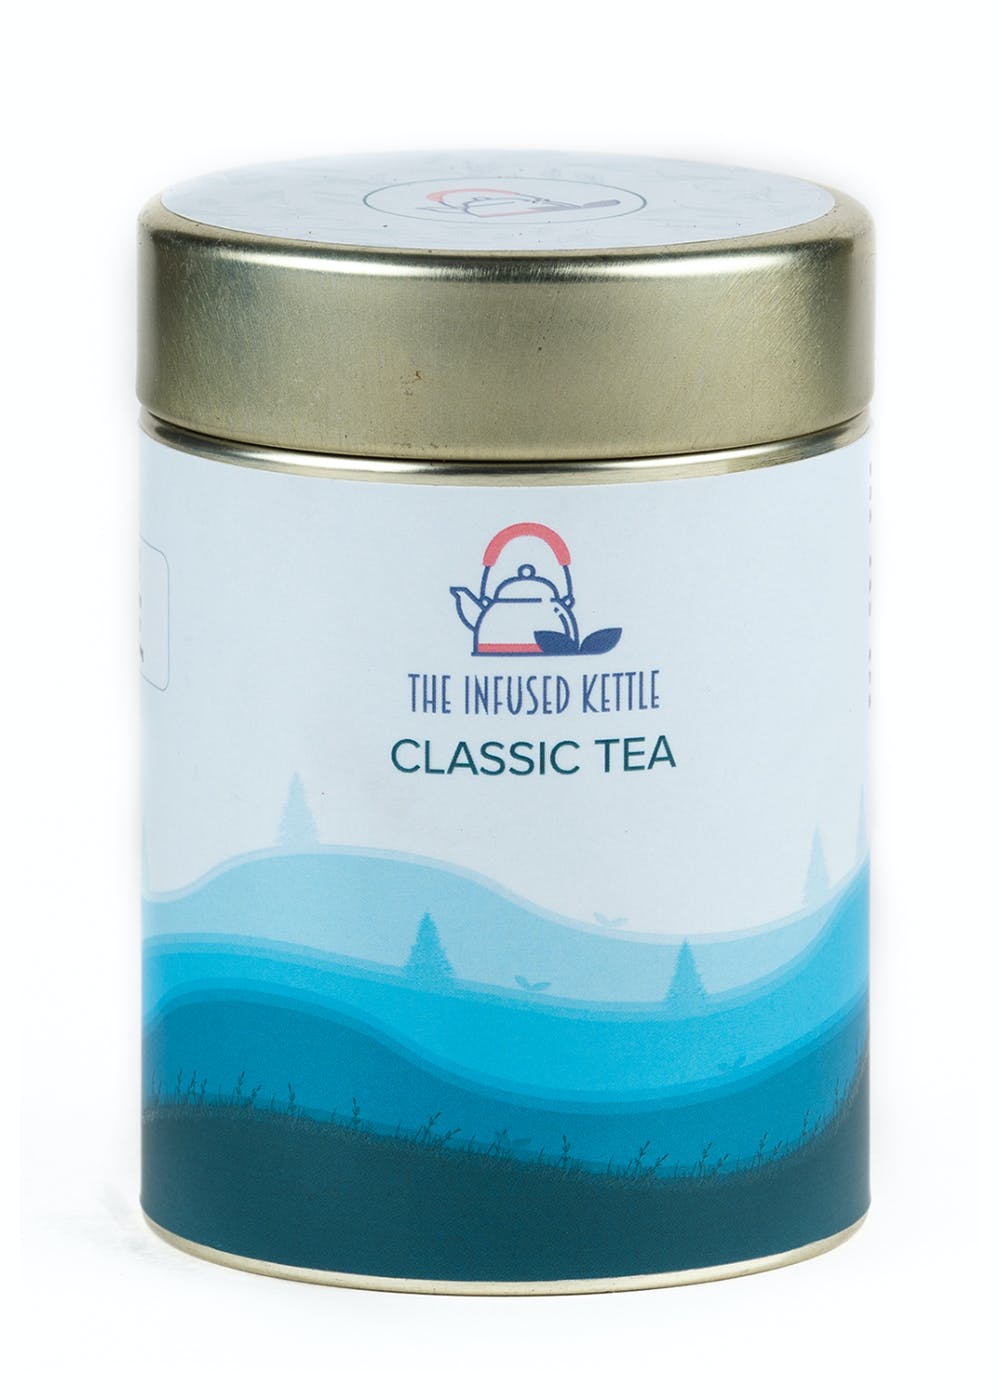 Darjeeling Oolong Classic Tea - Blend of Oolong Tea Leaves and Buds